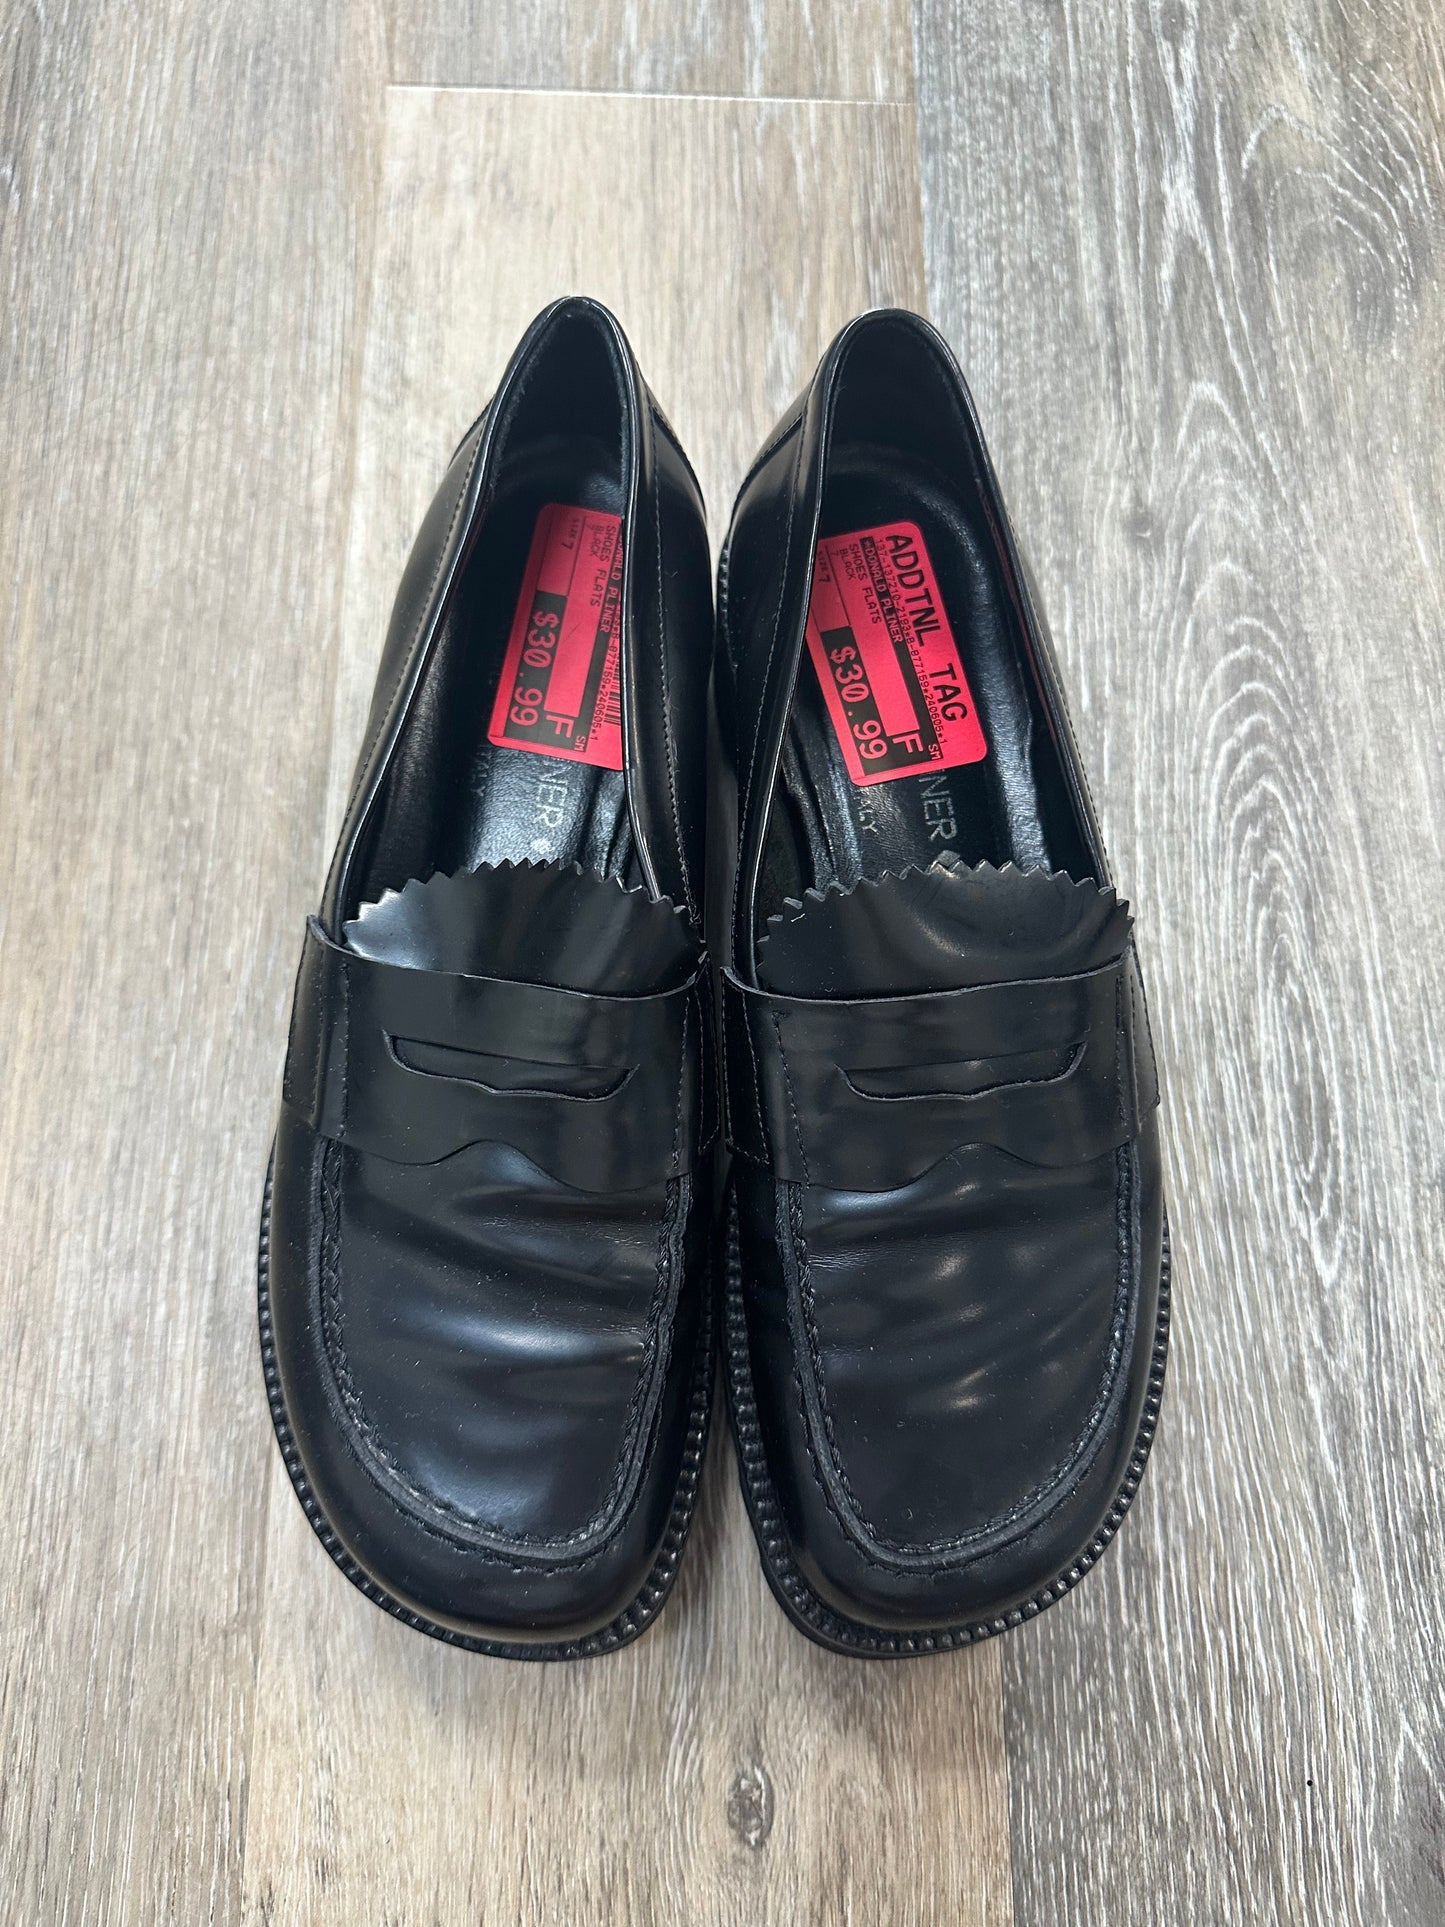 Black Shoes Flats Donald Pliner, Size 7